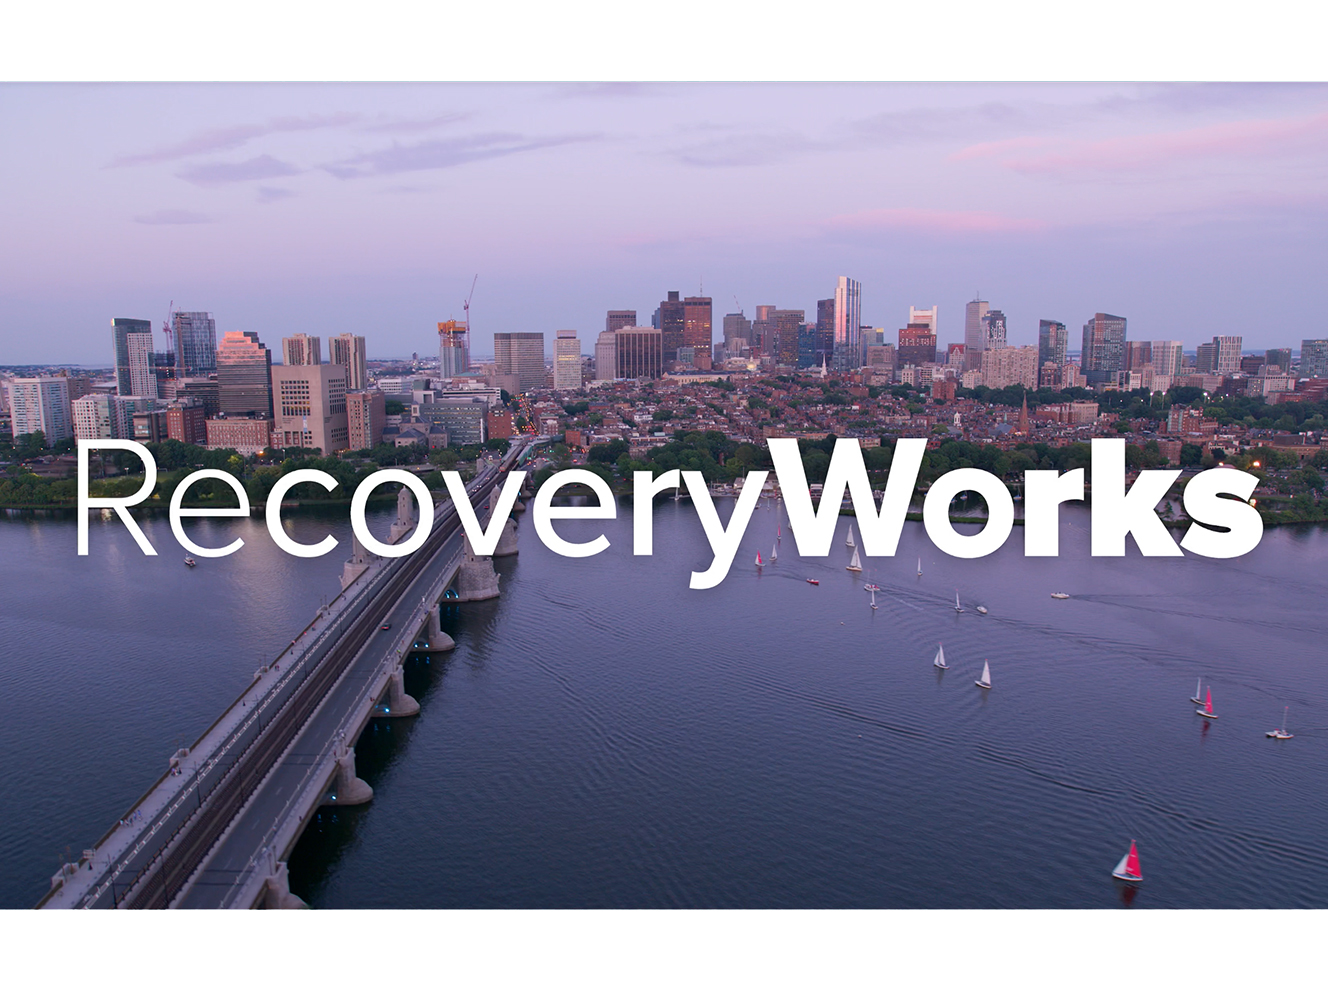 RecoveryWorks: Rekindling Hope, Reclaiming Dreams